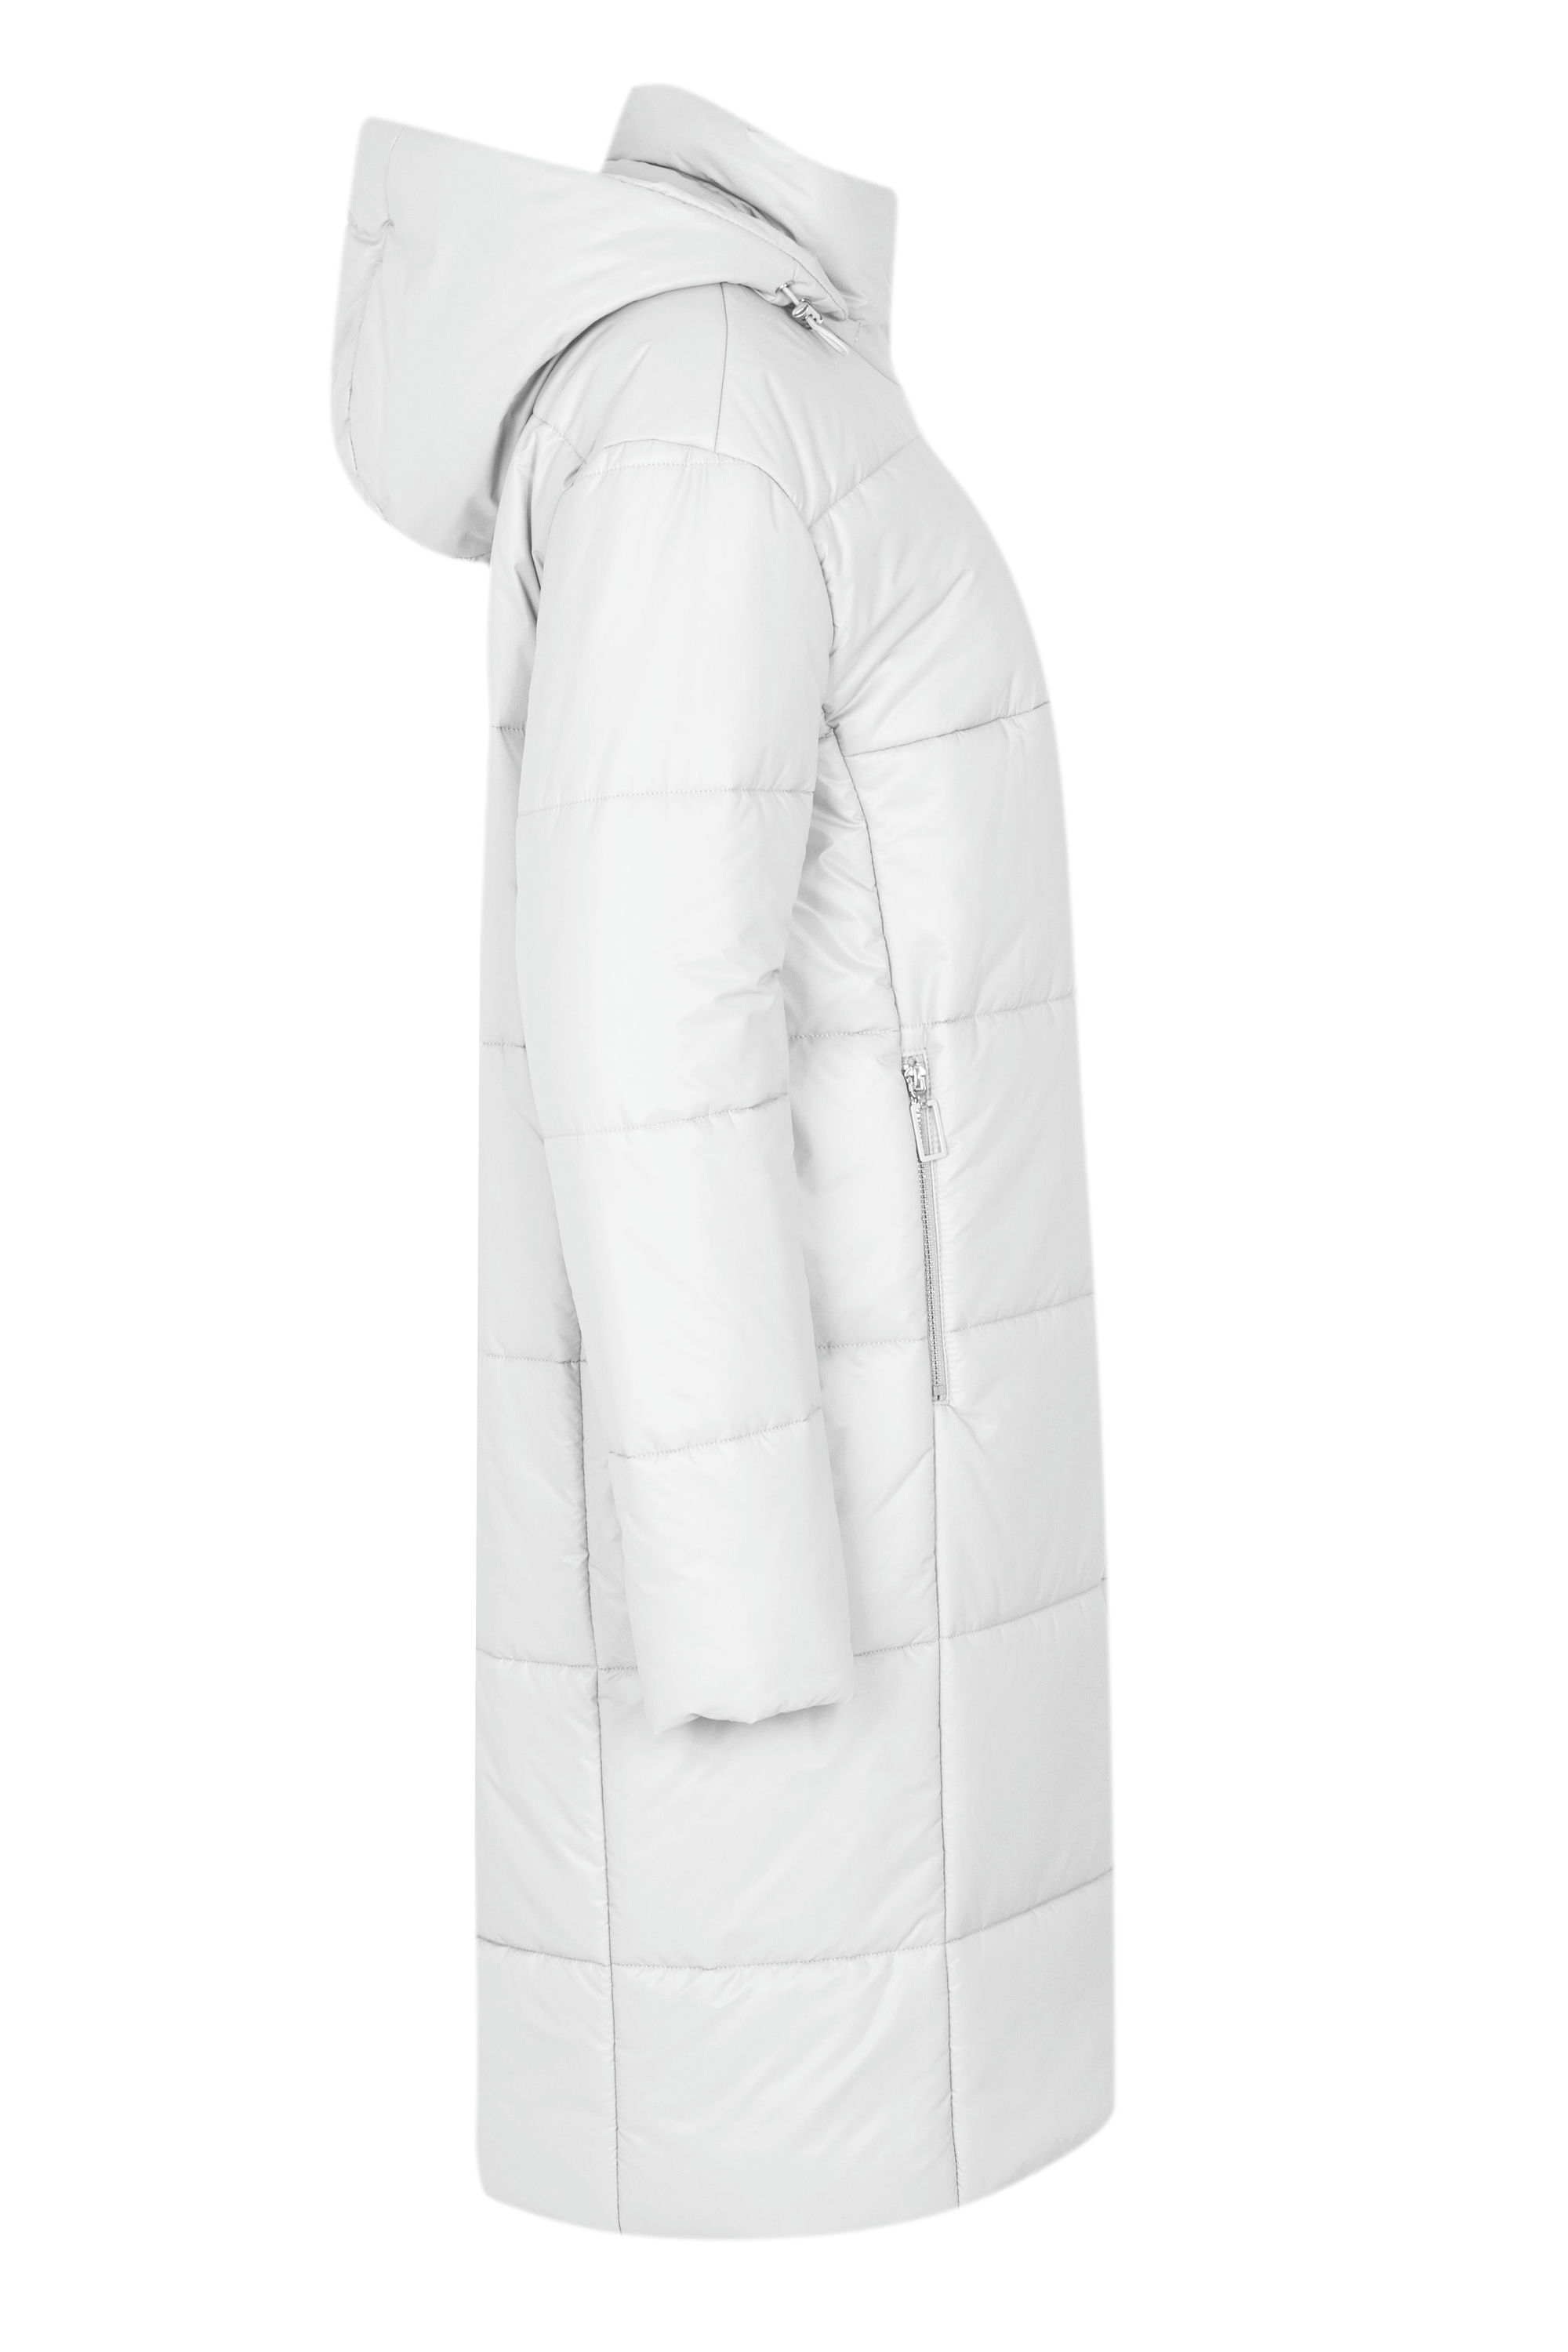 Пальто женское плащевое утепленное 5-12327-1